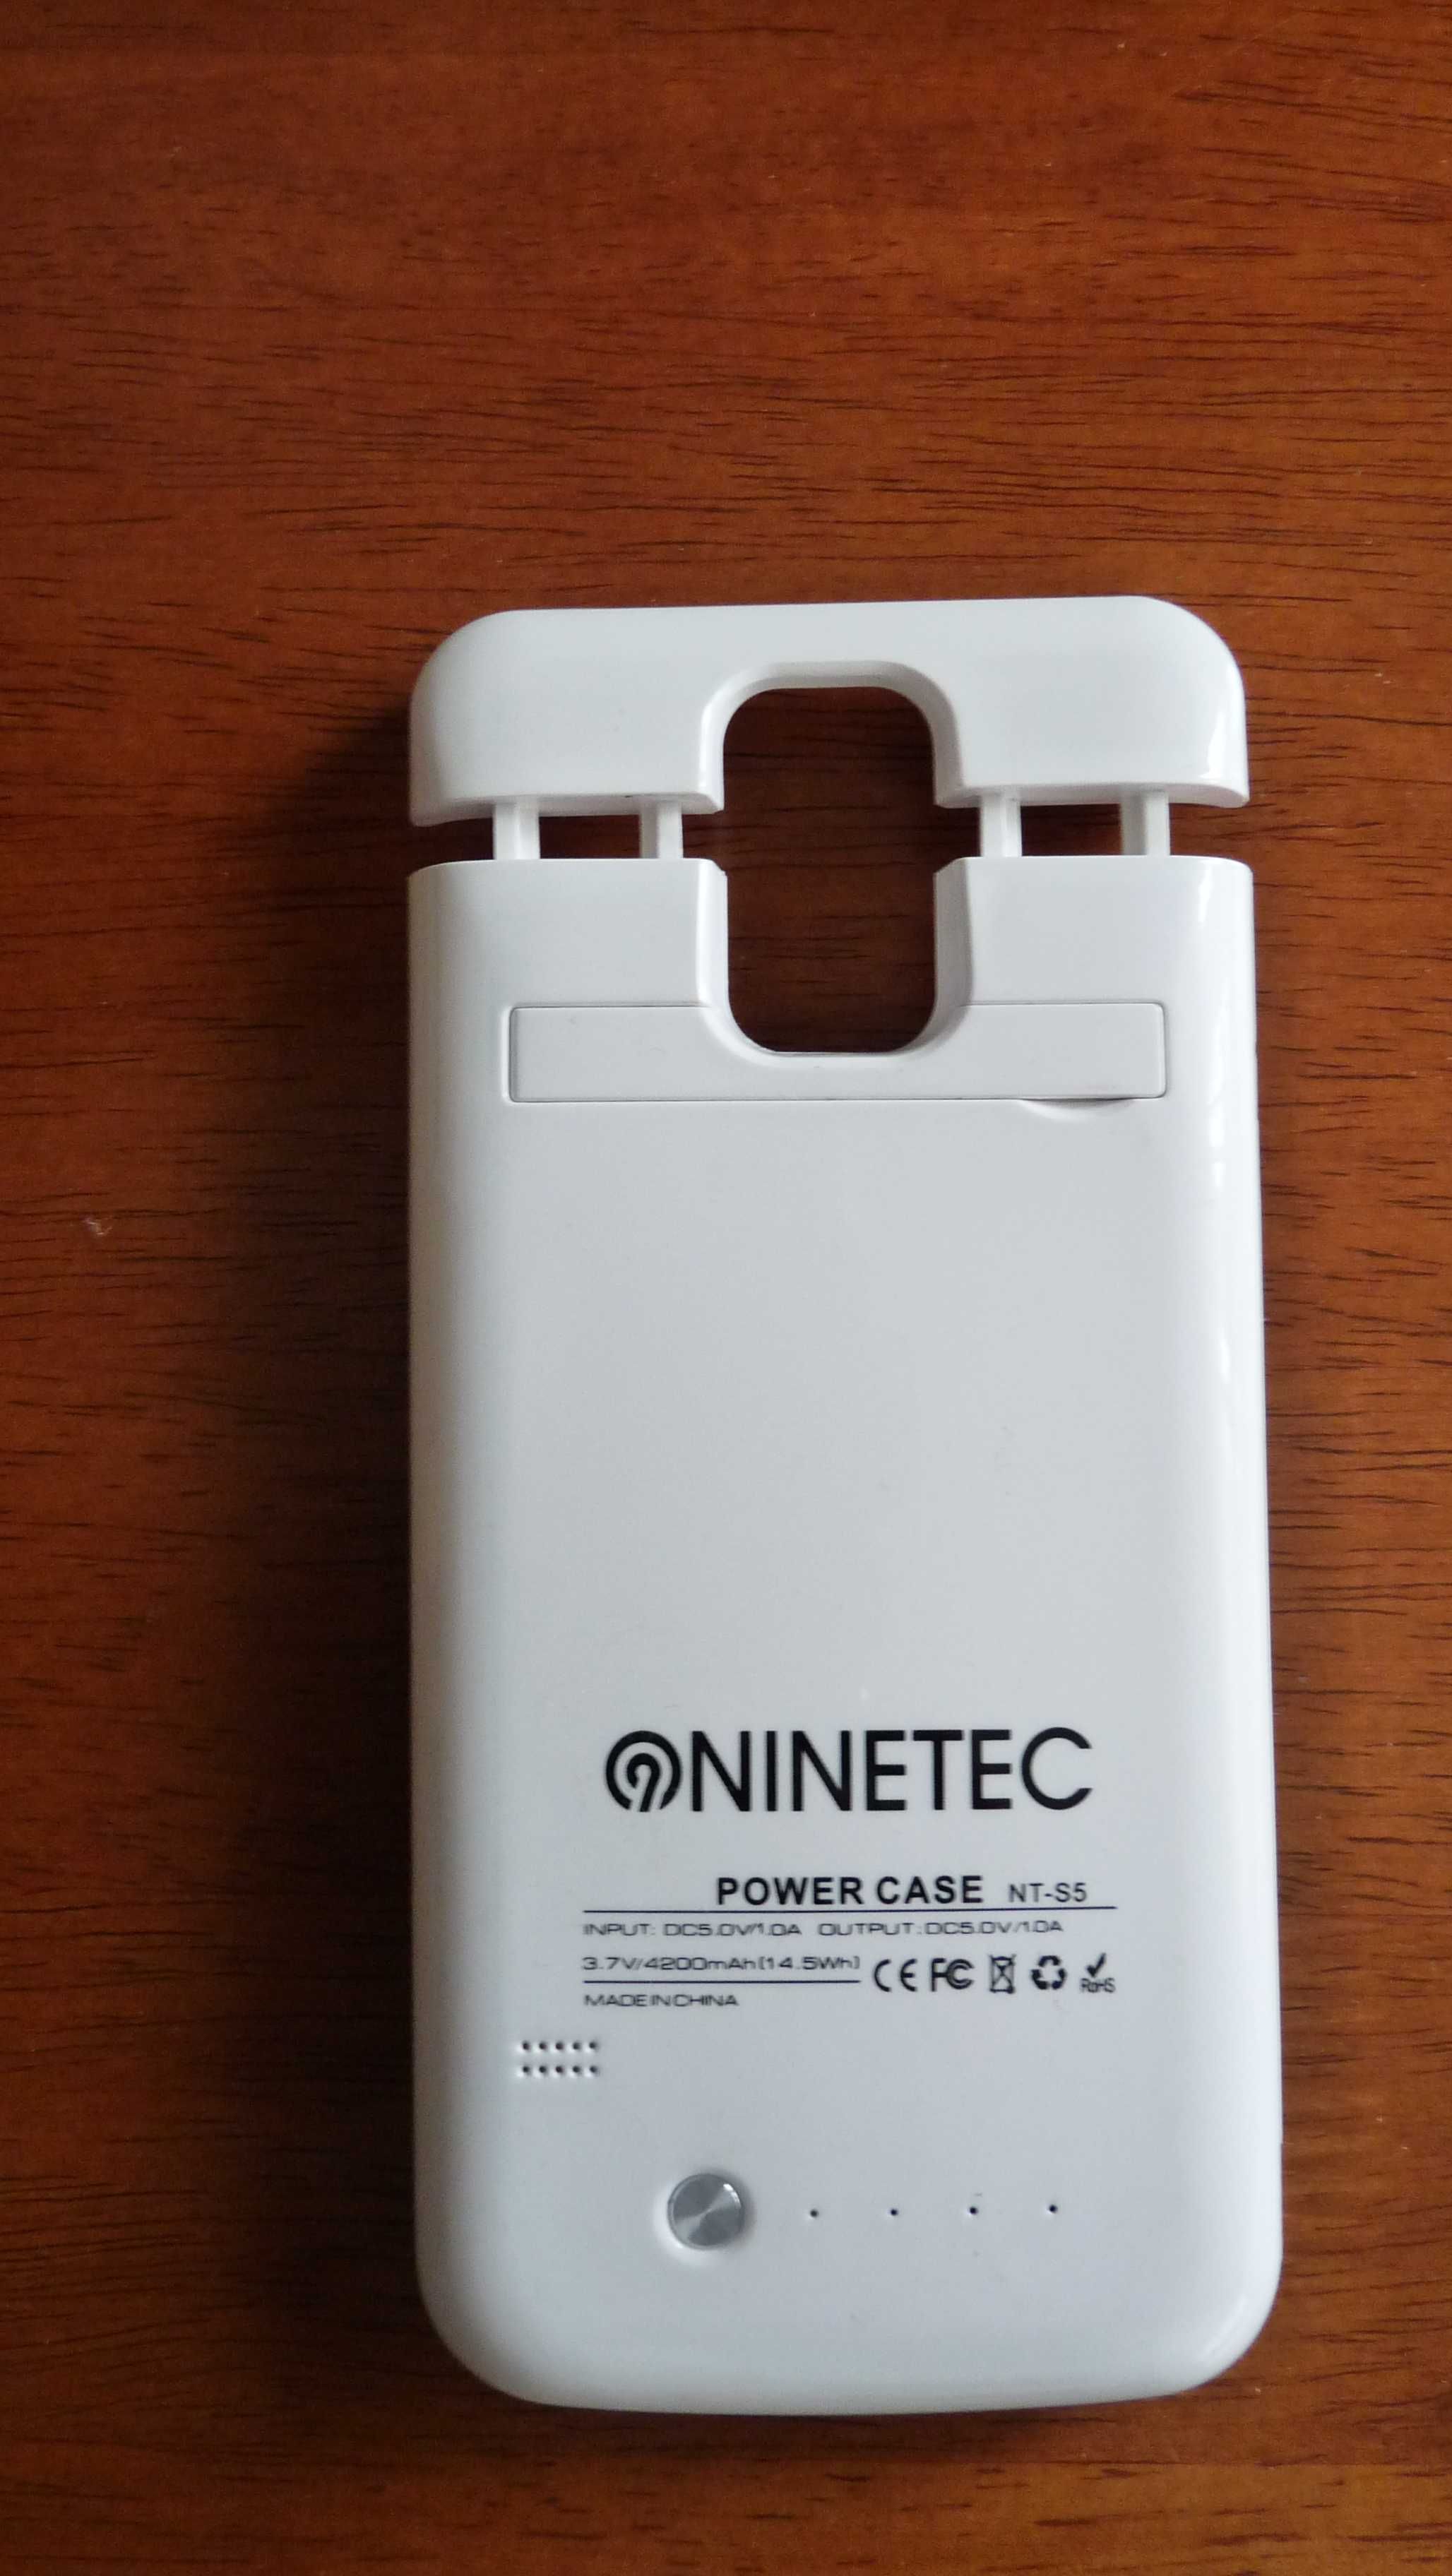 Външна батерия за SAMSUNG GALAXY S5 - марка NINETEC